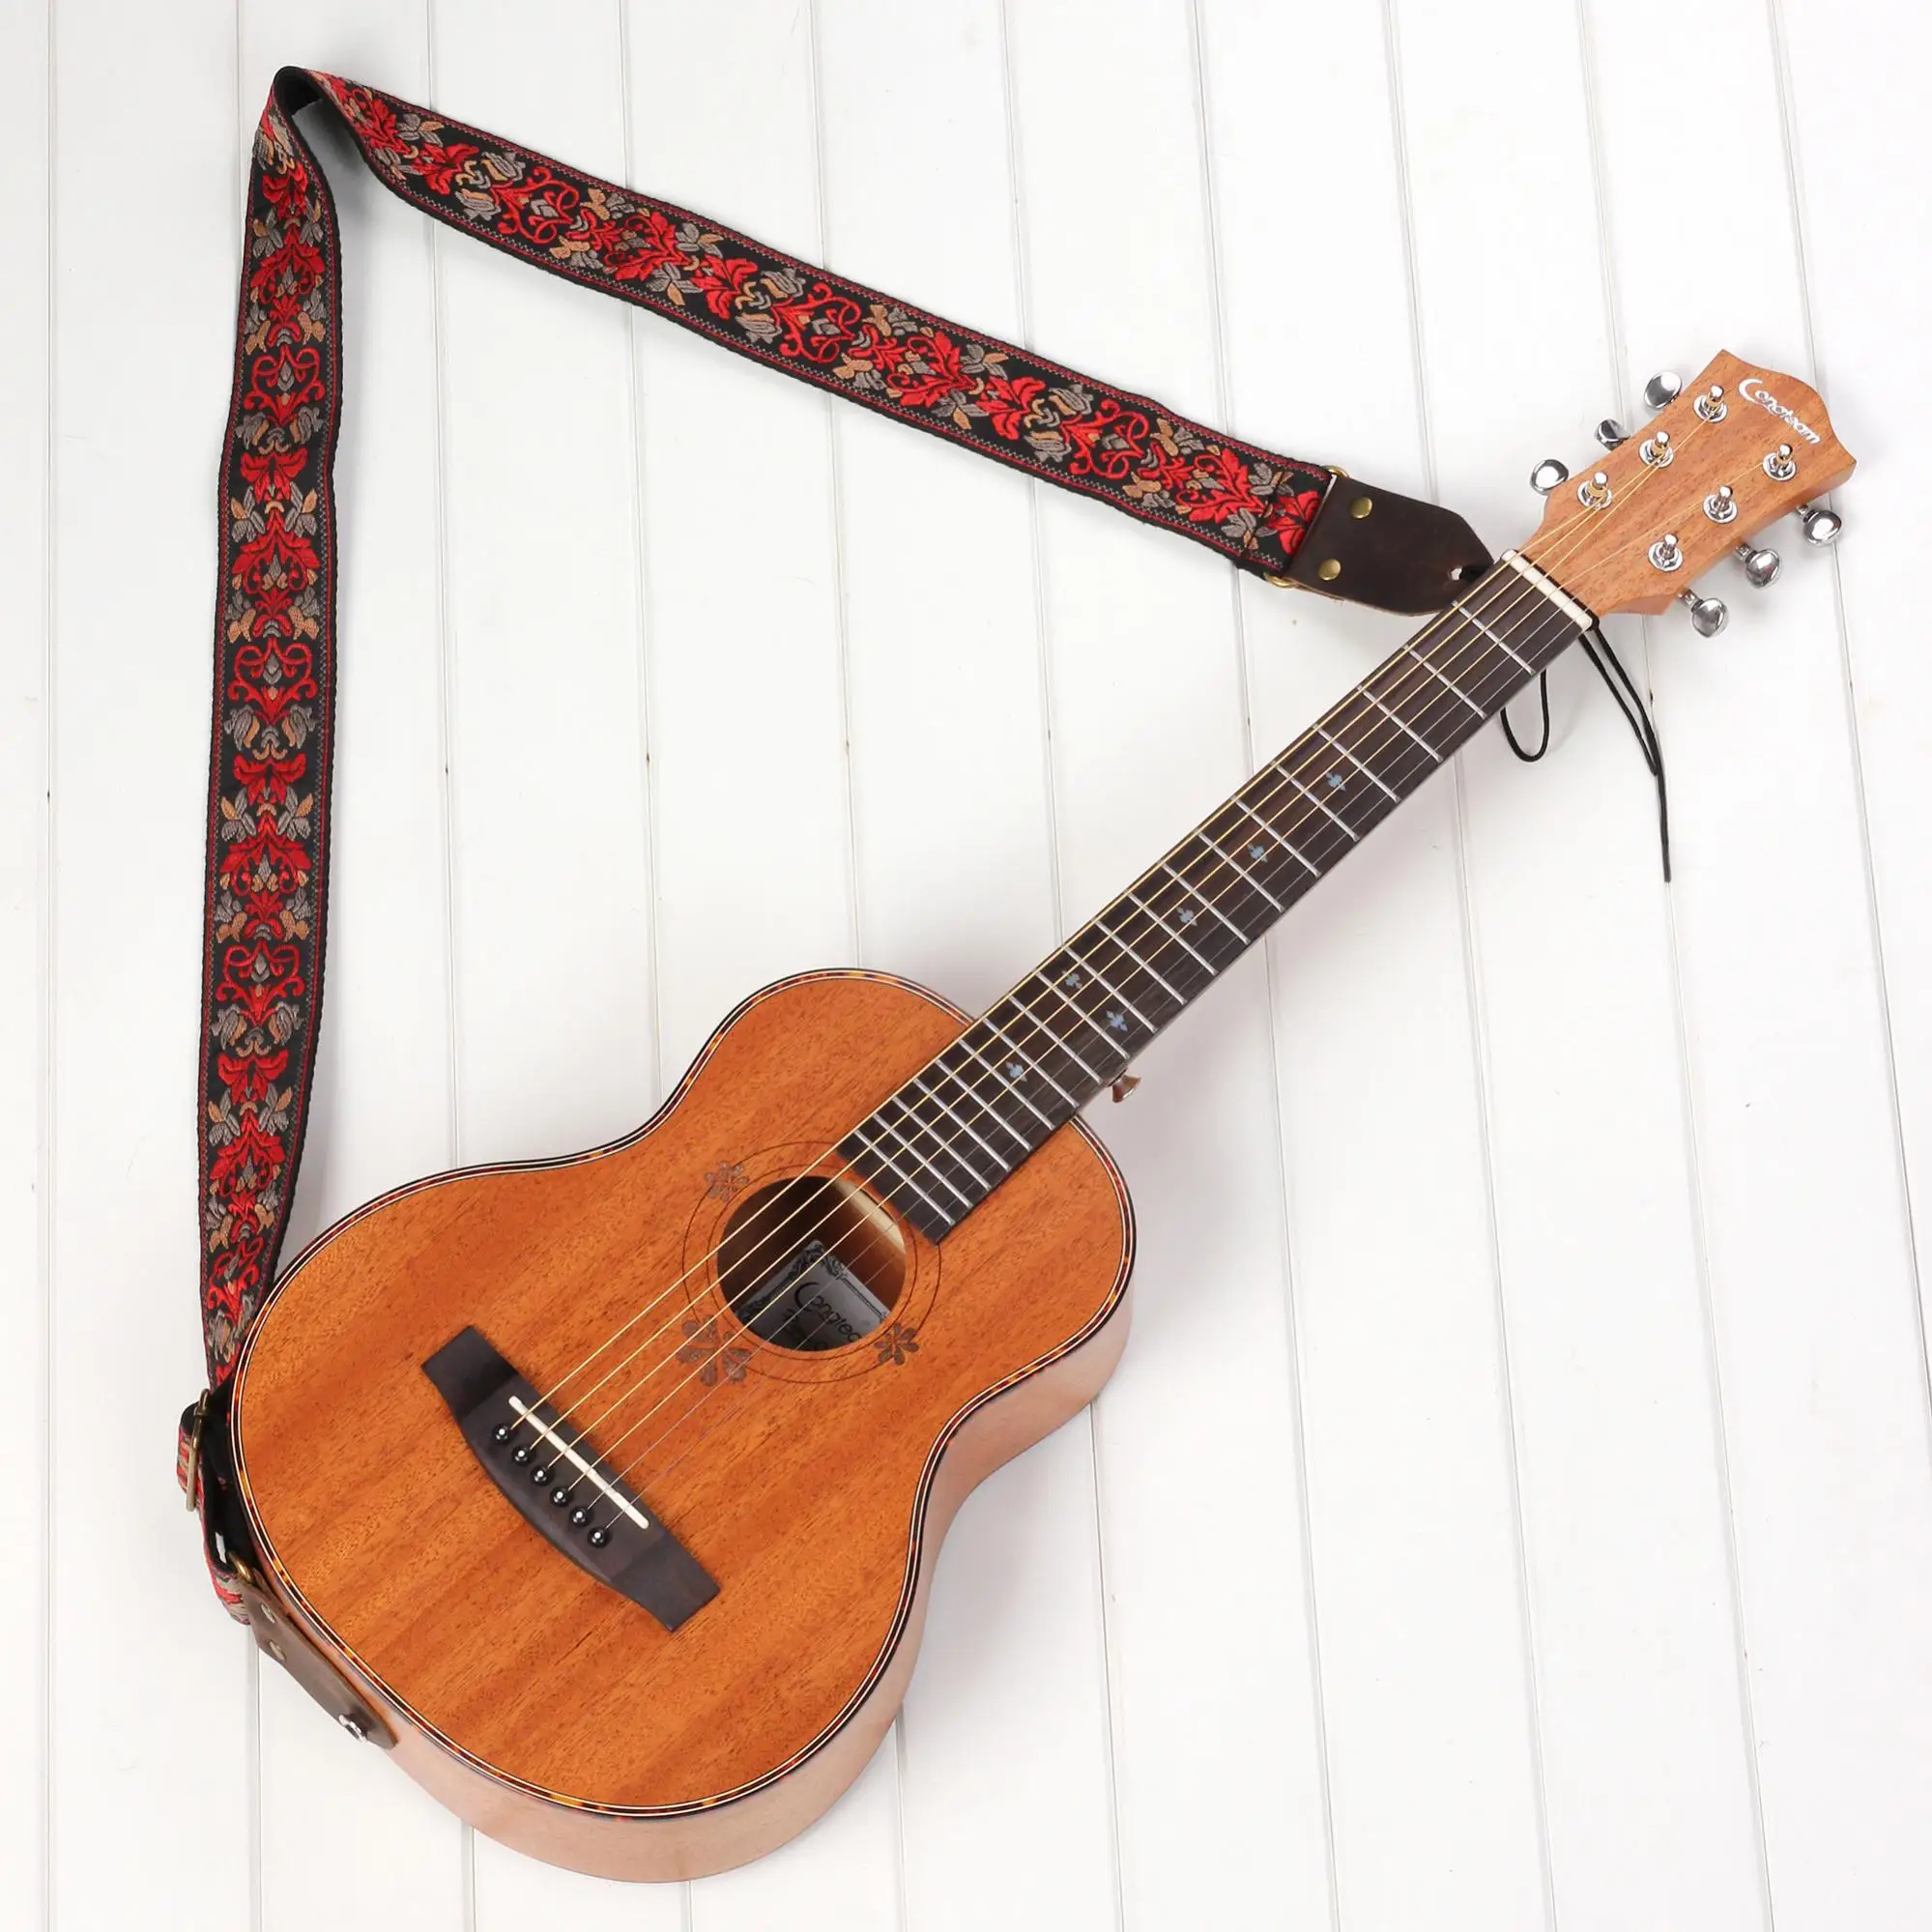 Vintage Flores Guitarra Pulseira de Couro Genuíno Cabeça Listras Bohemia Estilo de Tecidos Bordados Tecidos para Guitarra ou Baixo Imagem 2